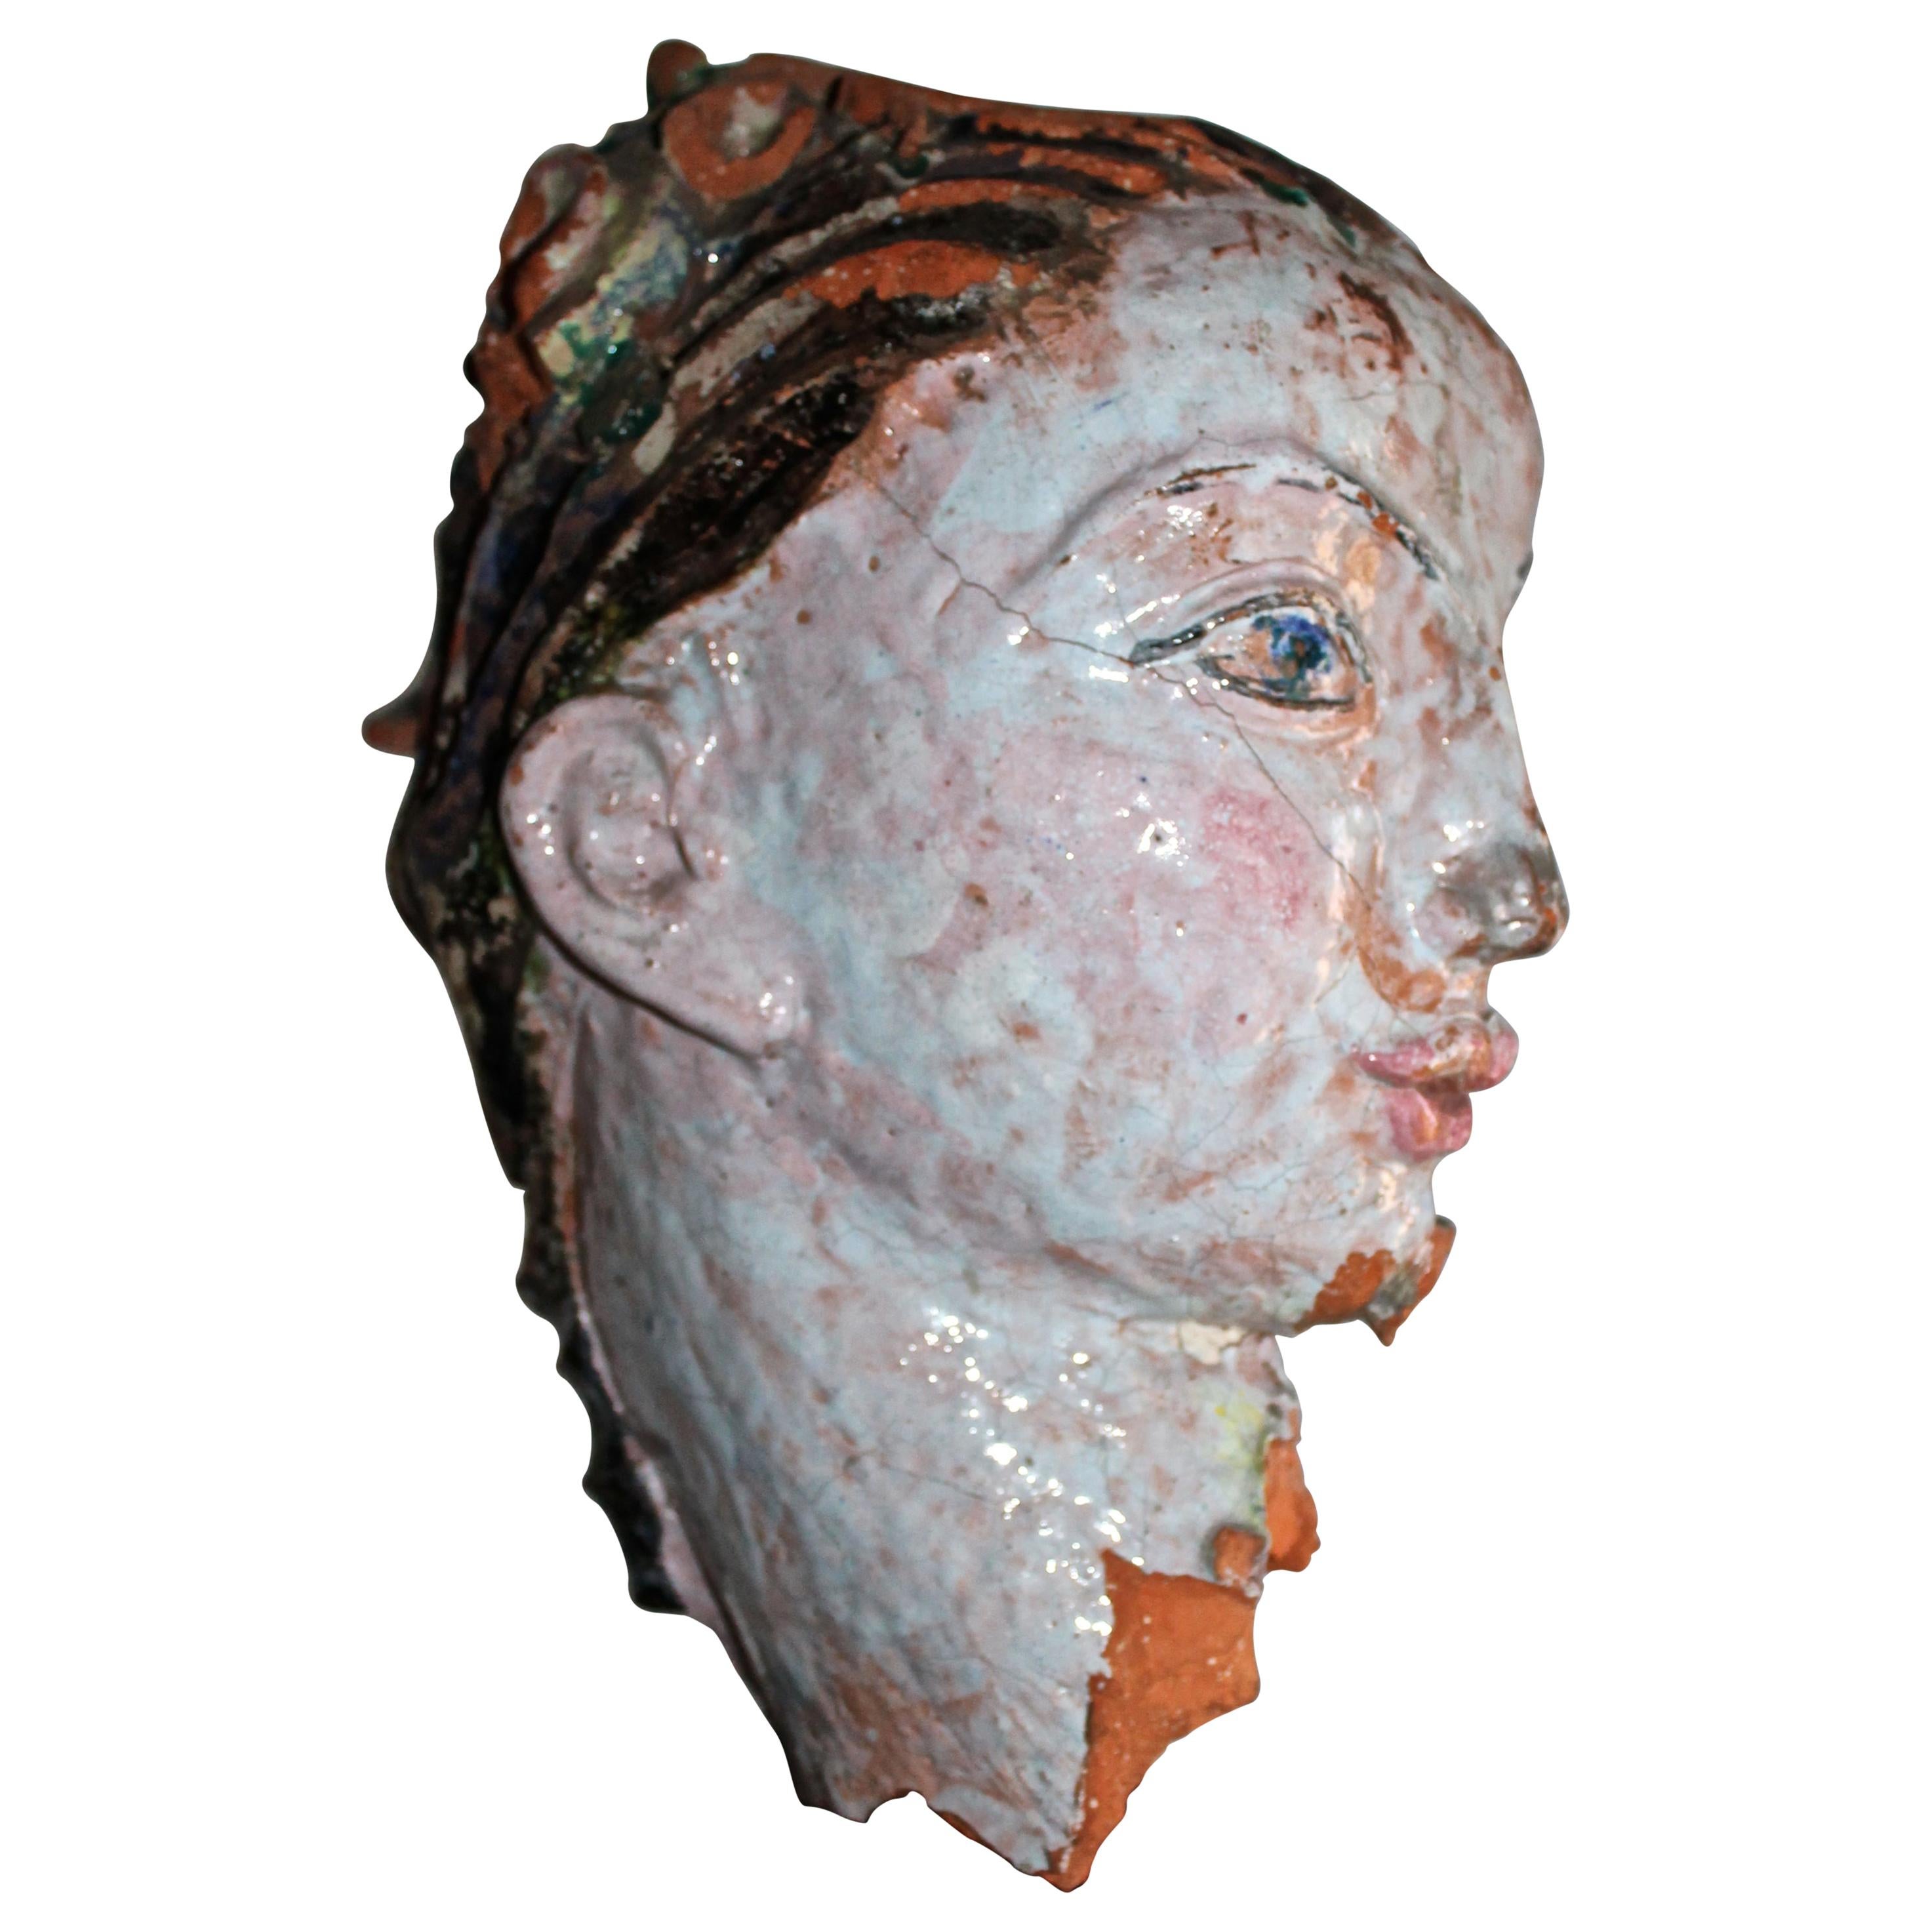 Vally Wieselthier Ceramic Head, Hand from Manhattan Wiener Werkstätte Showroom